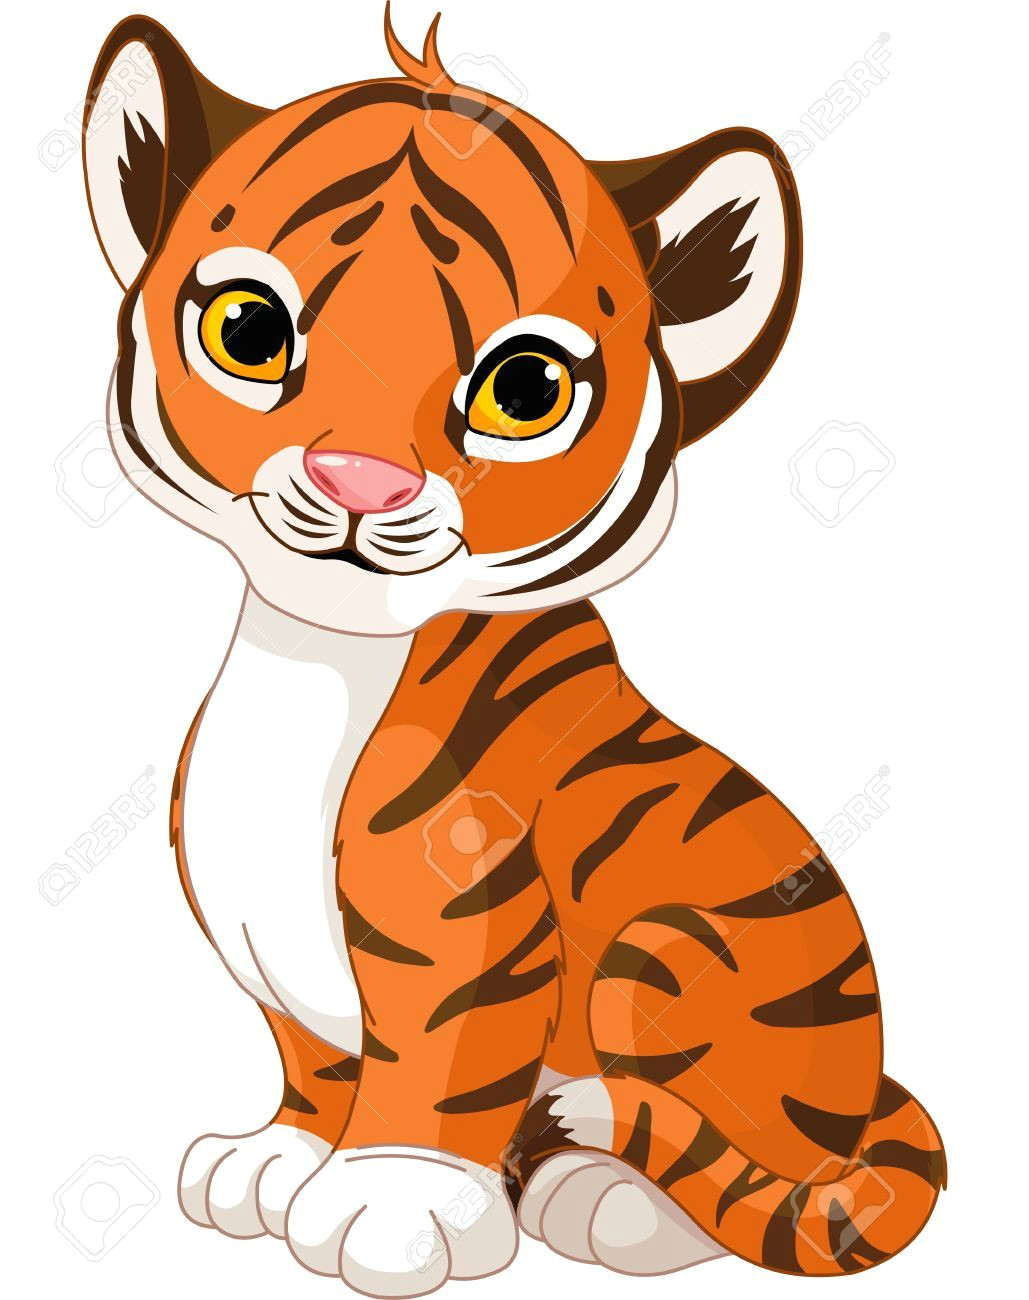 tiger cartoon drawing cartoon drawings baby cartoon cute tiger cubs cute tigers